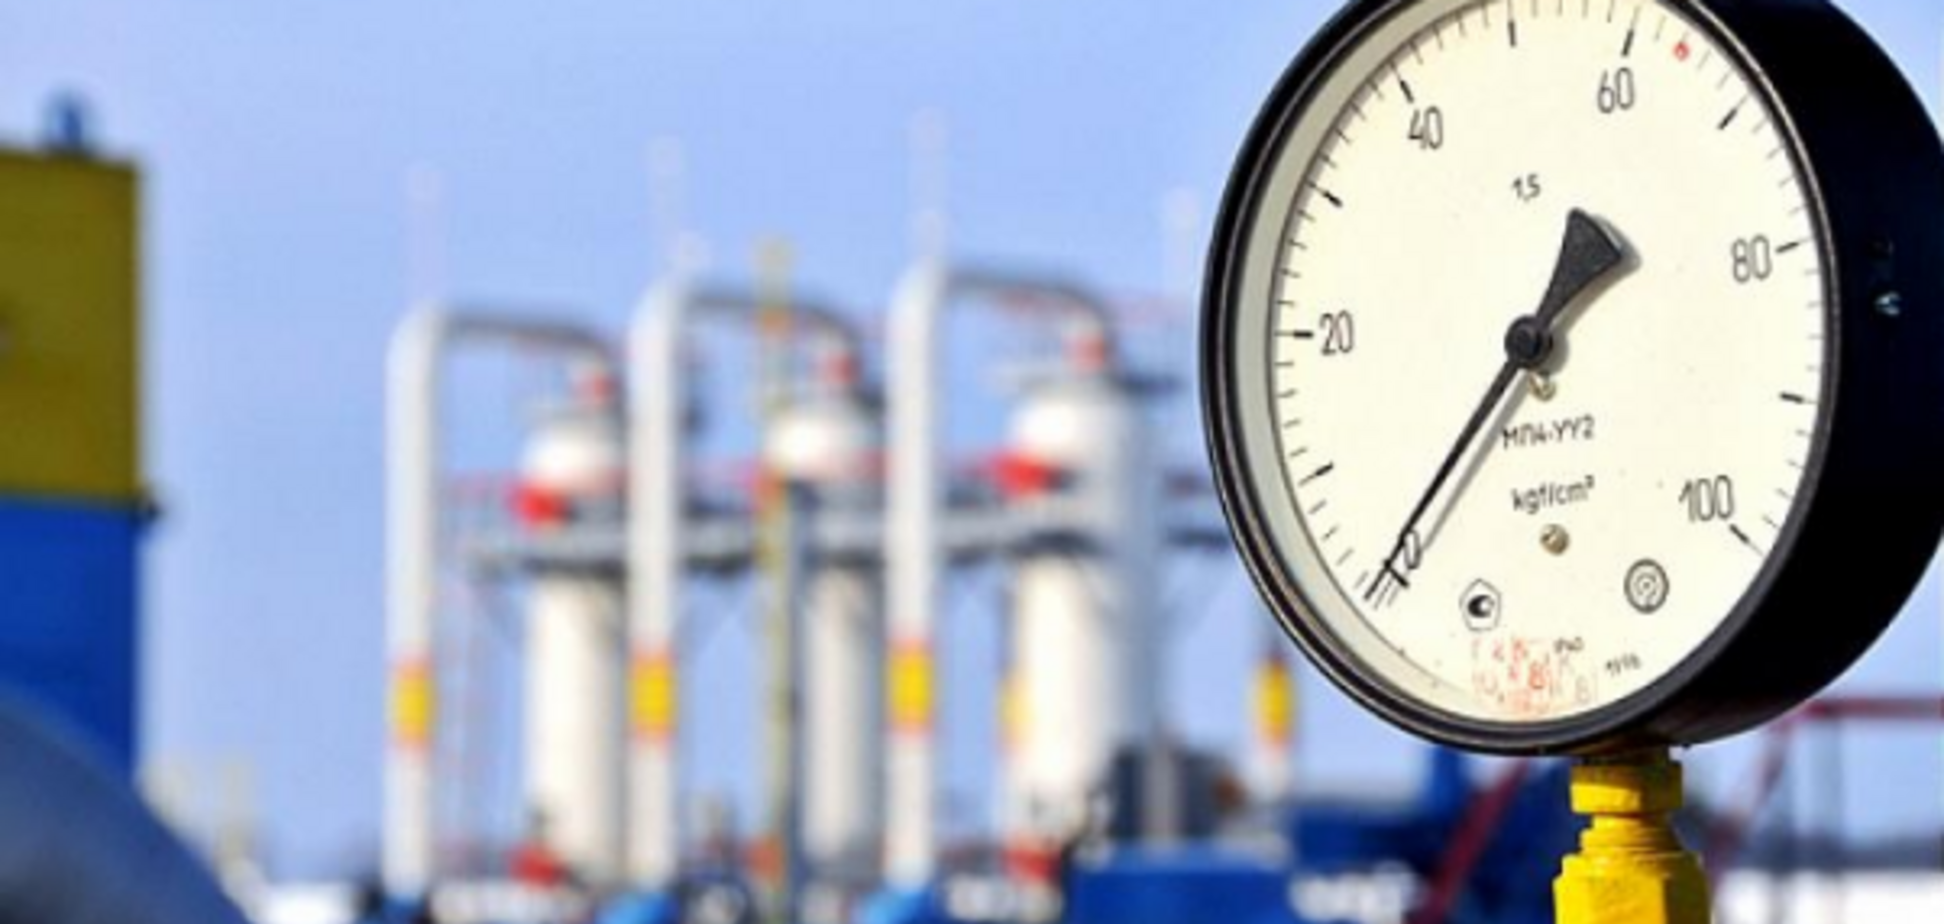 'Ми наполягаємо': 'Нафтогаз' озвучив пропозицію 'Газпрому'